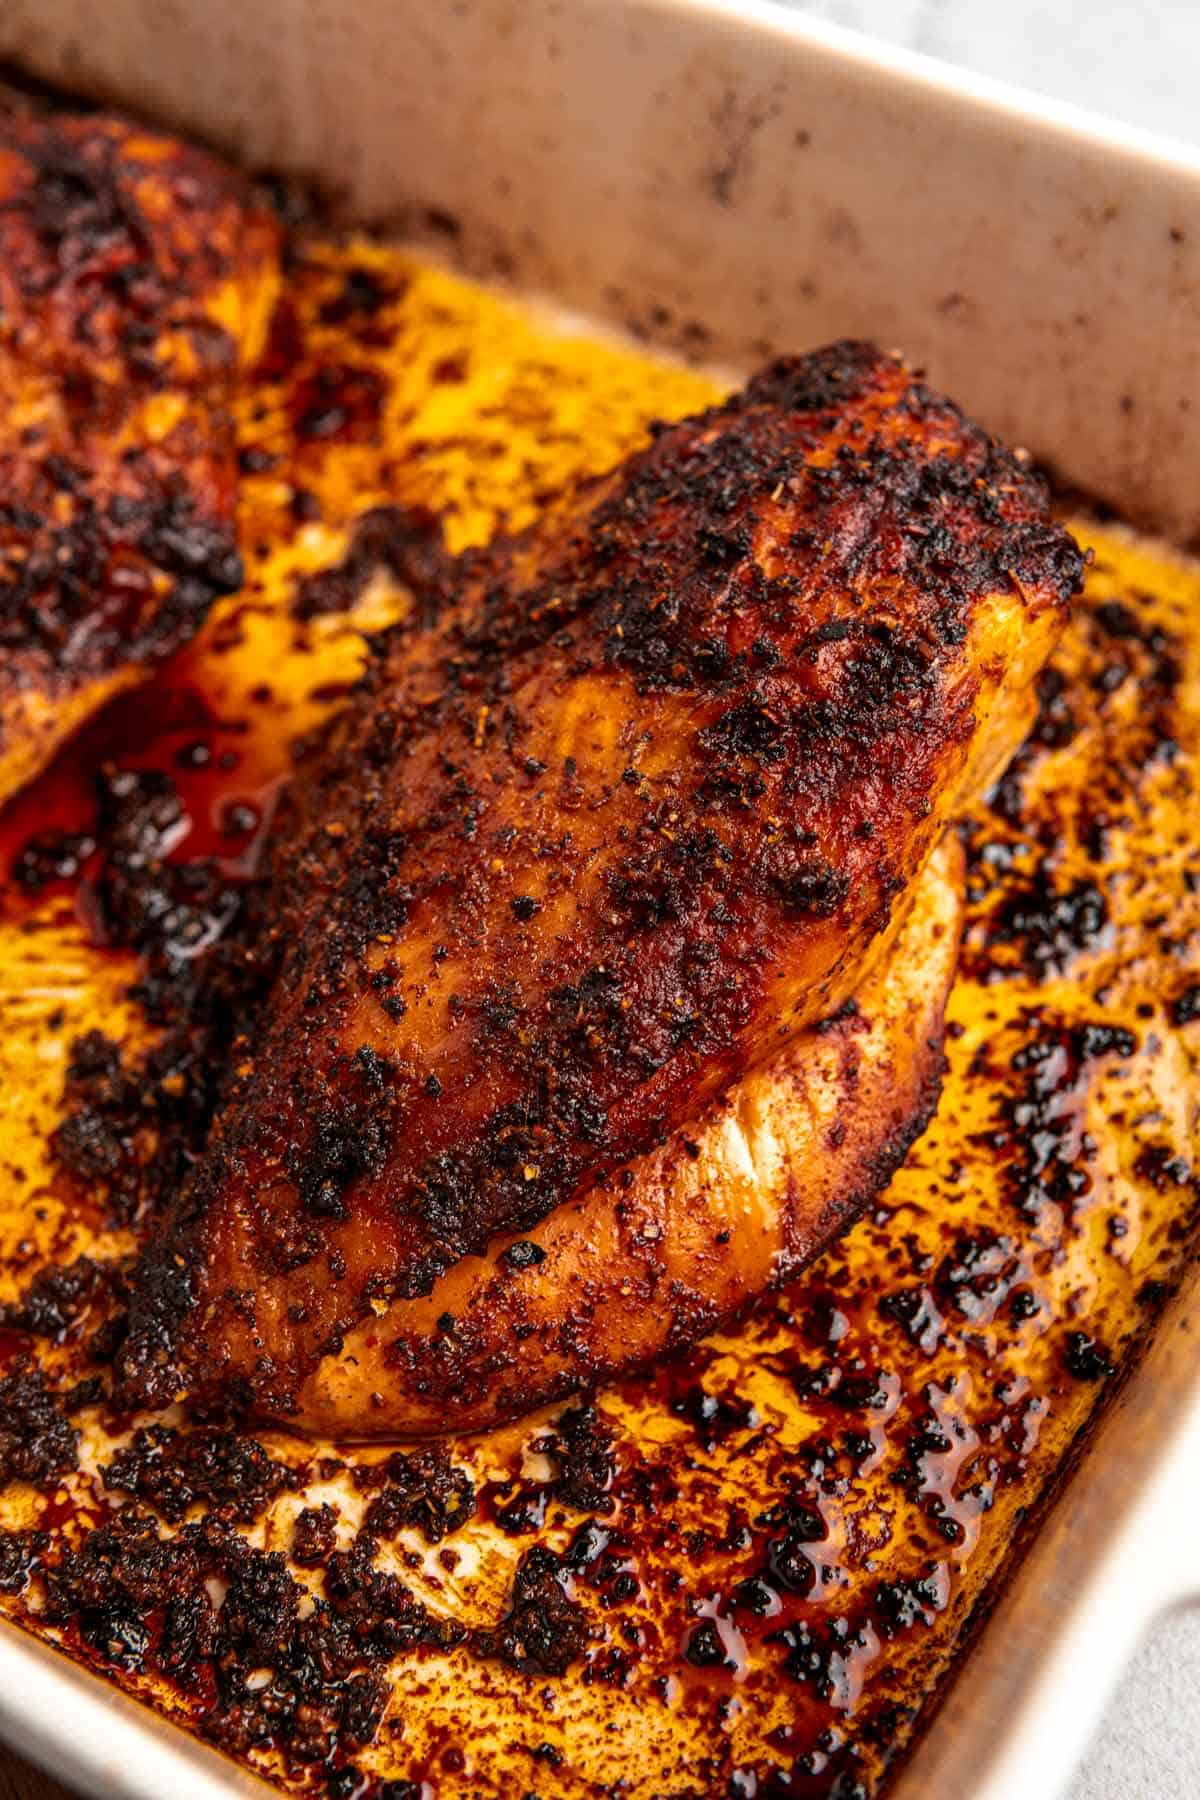 freshly roasted turkey breast in baking pan.